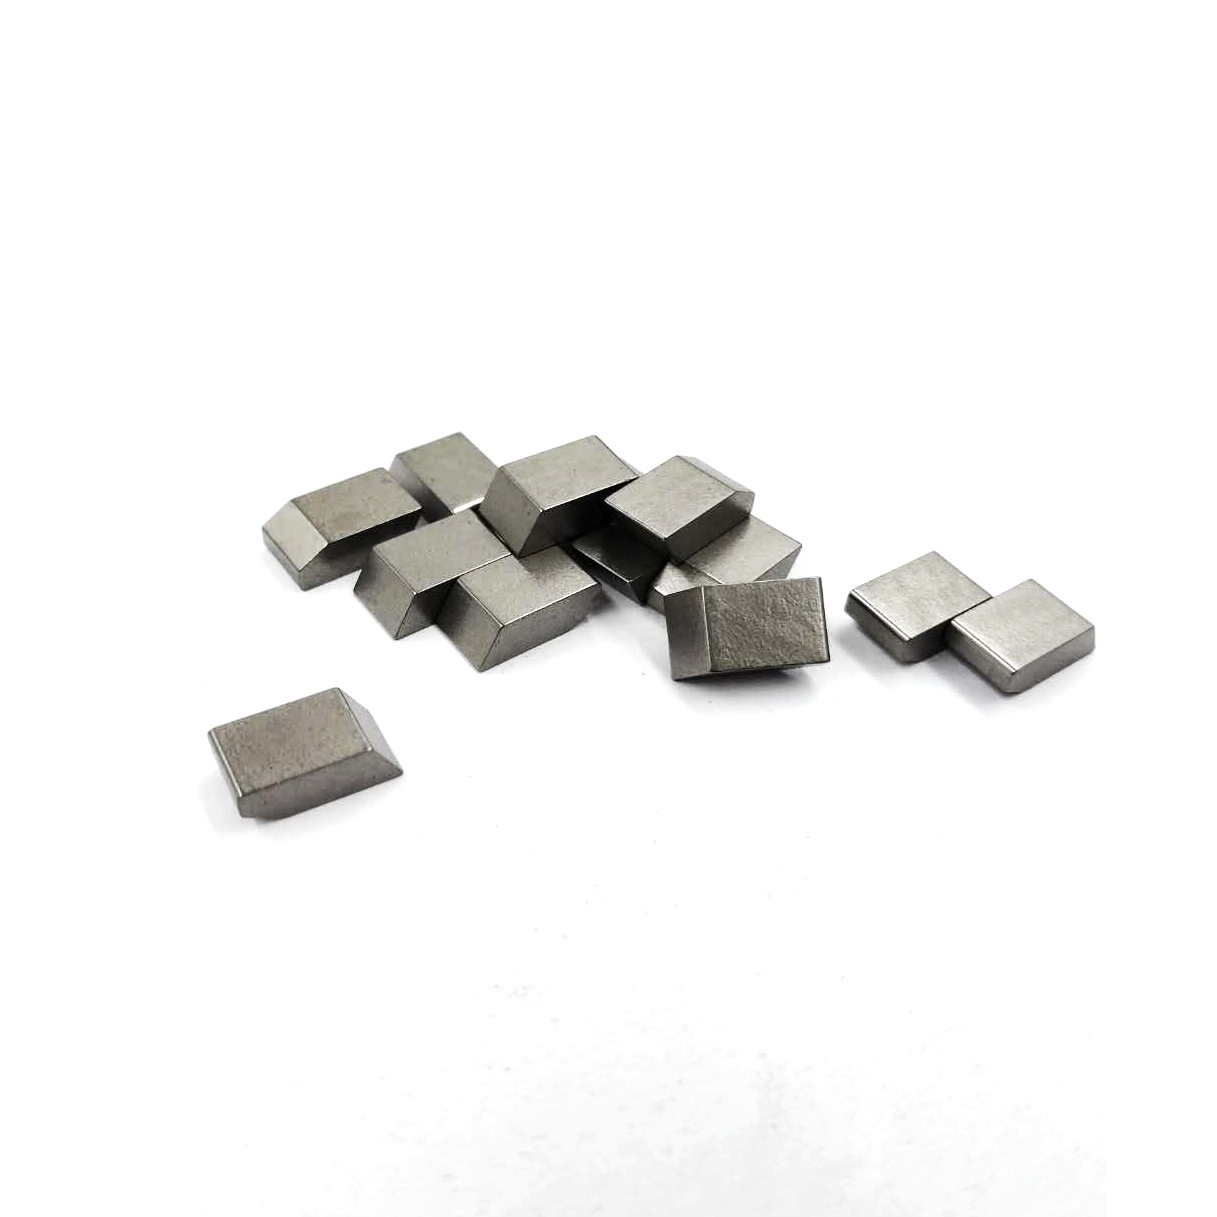 YG6 tungsten carbide /cemented carbide saw tips Tungsten Carbide Saw Tips for Woodworking